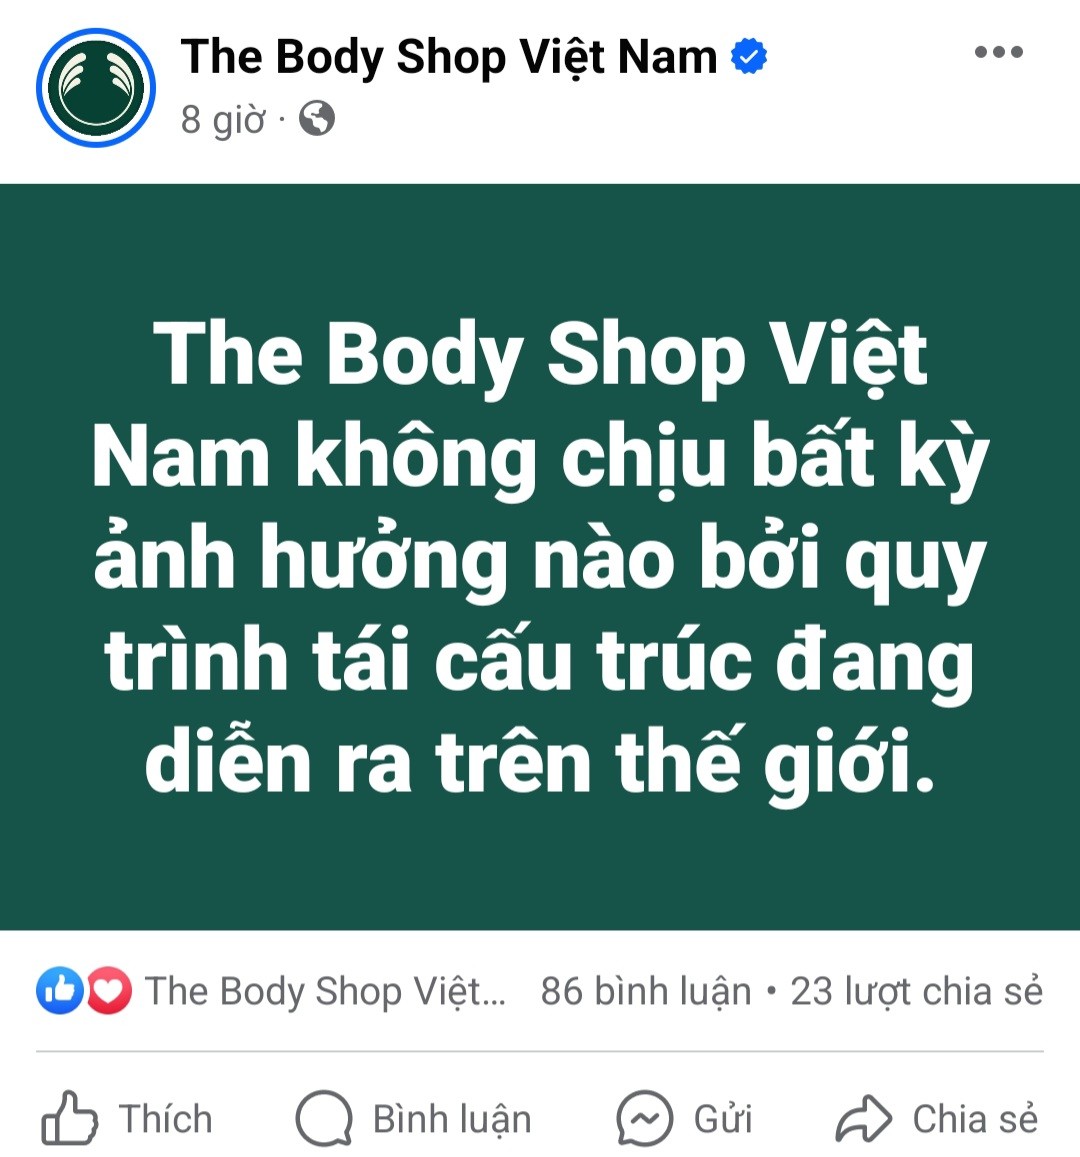 The Body Shop sụp đổ đế chế mỹ phẩm trên toàn cầu, số phận của The Body Shop Việt Nam ra sao?